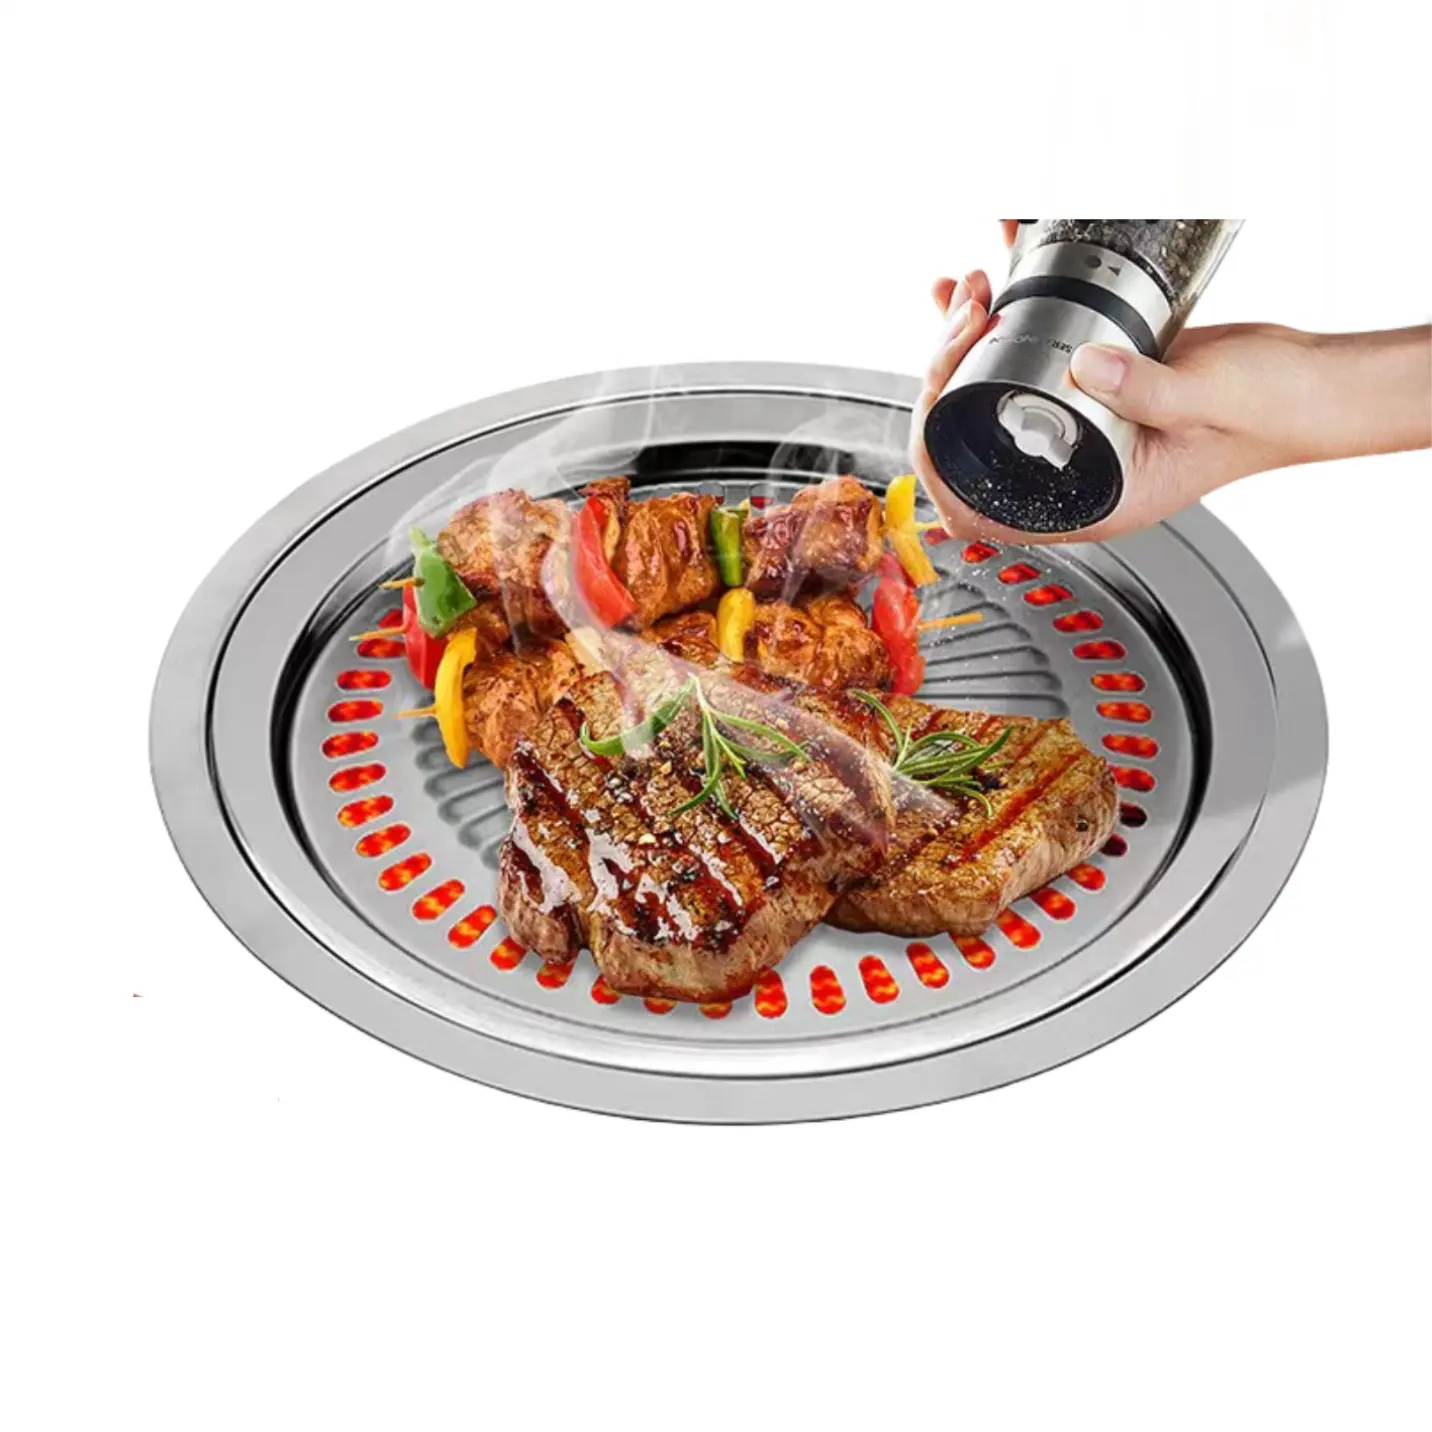 30cm électrique infrarouge cuisinière grill spécial barbecue plateau ménage extérieur barbecue cassette poêle barbecue fournitures cadeaux